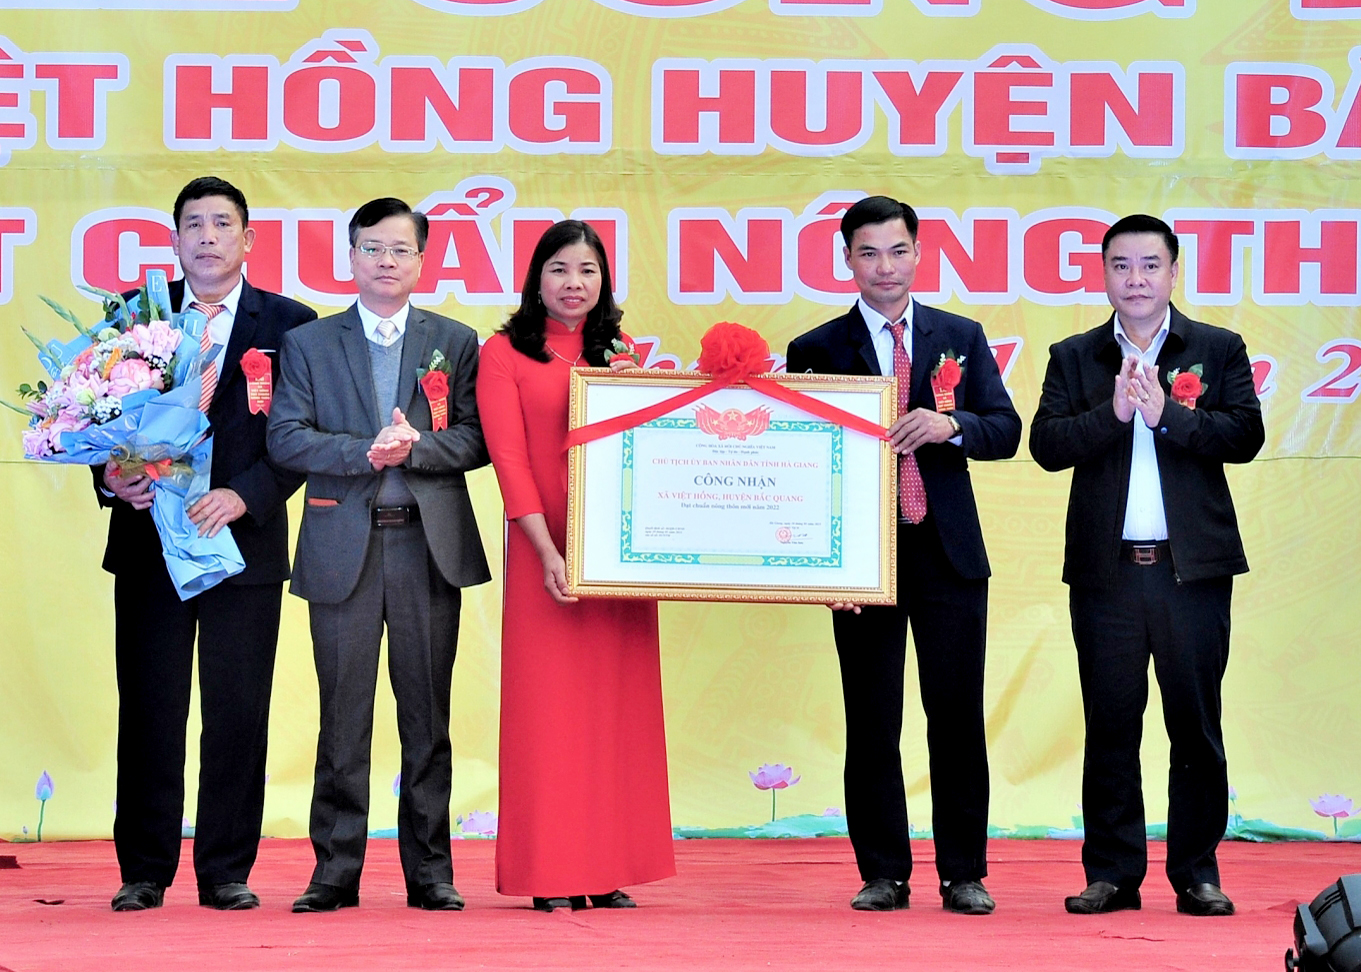 Thay mặt các đồng chí lãnh đạo tỉnh, Phó Chủ tịch Thường trực UBND tỉnh Hoàng Gia Long đã trao Bằng công nhận NTM của Chủ tịch UBND tỉnh cho Đảng bộ, chính quyền và nhân dân xã Việt Hồng.